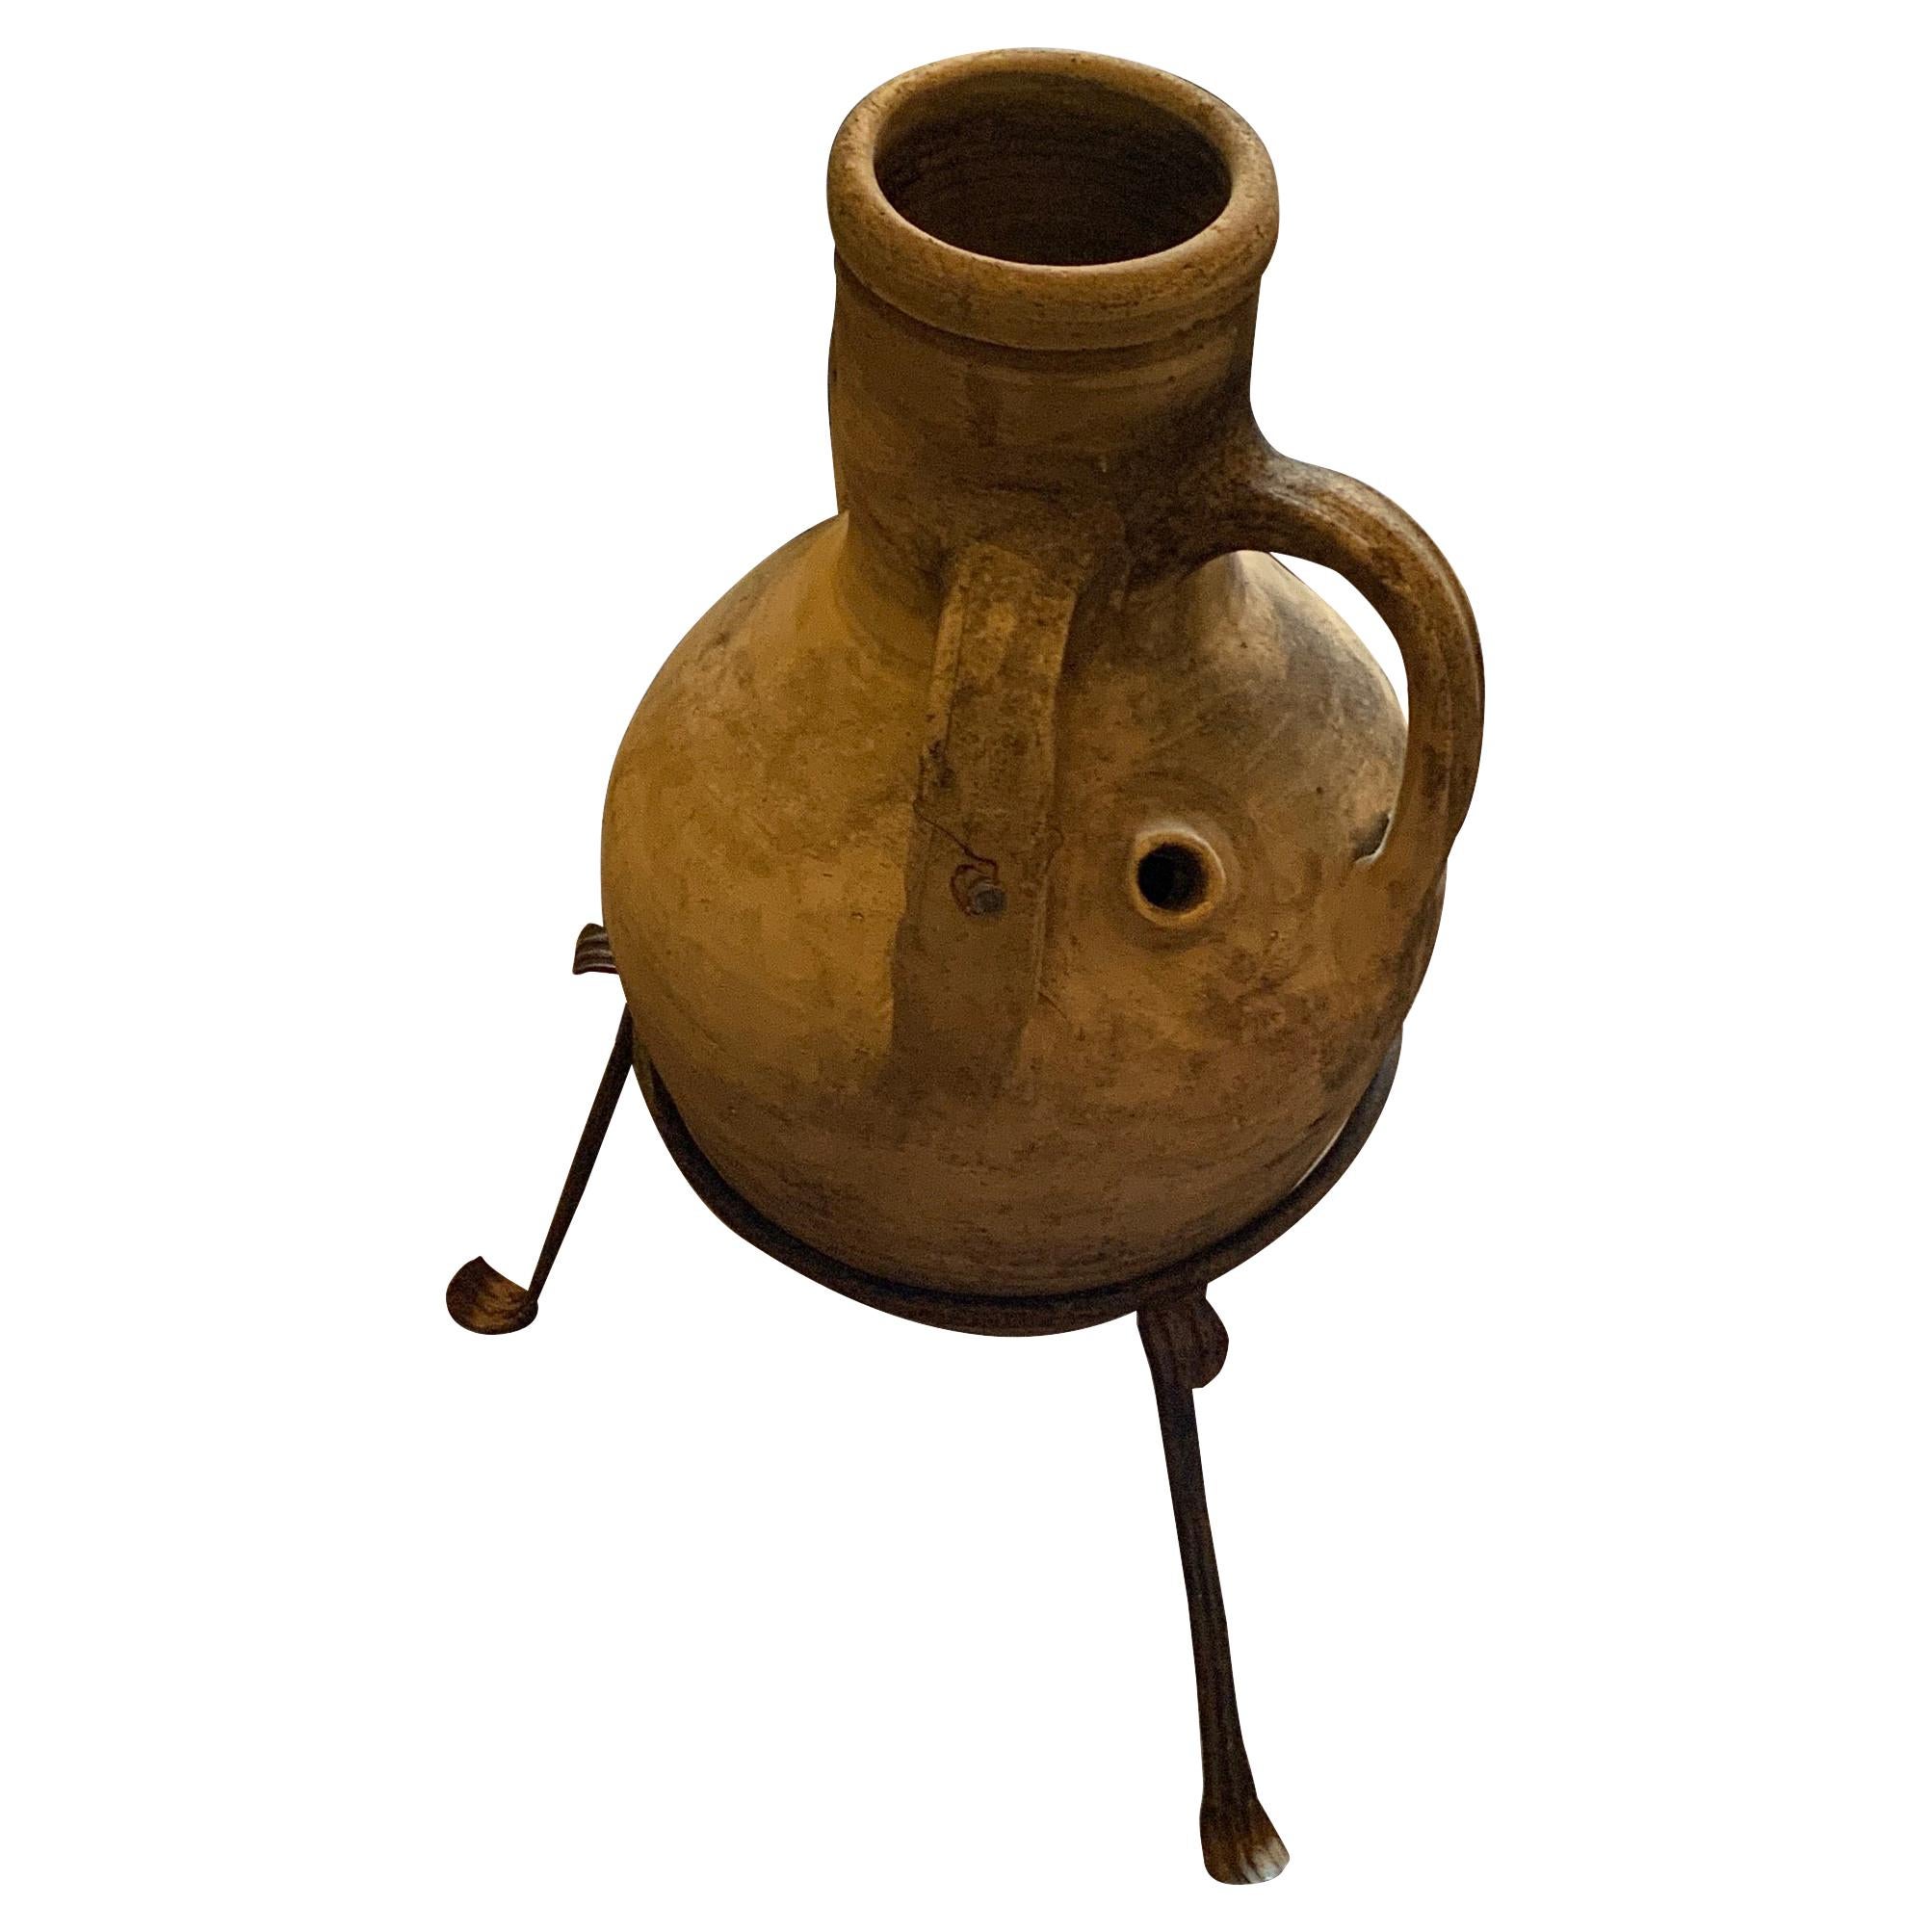 Pots à eau du XIXe siècle provenant d'une île grecque